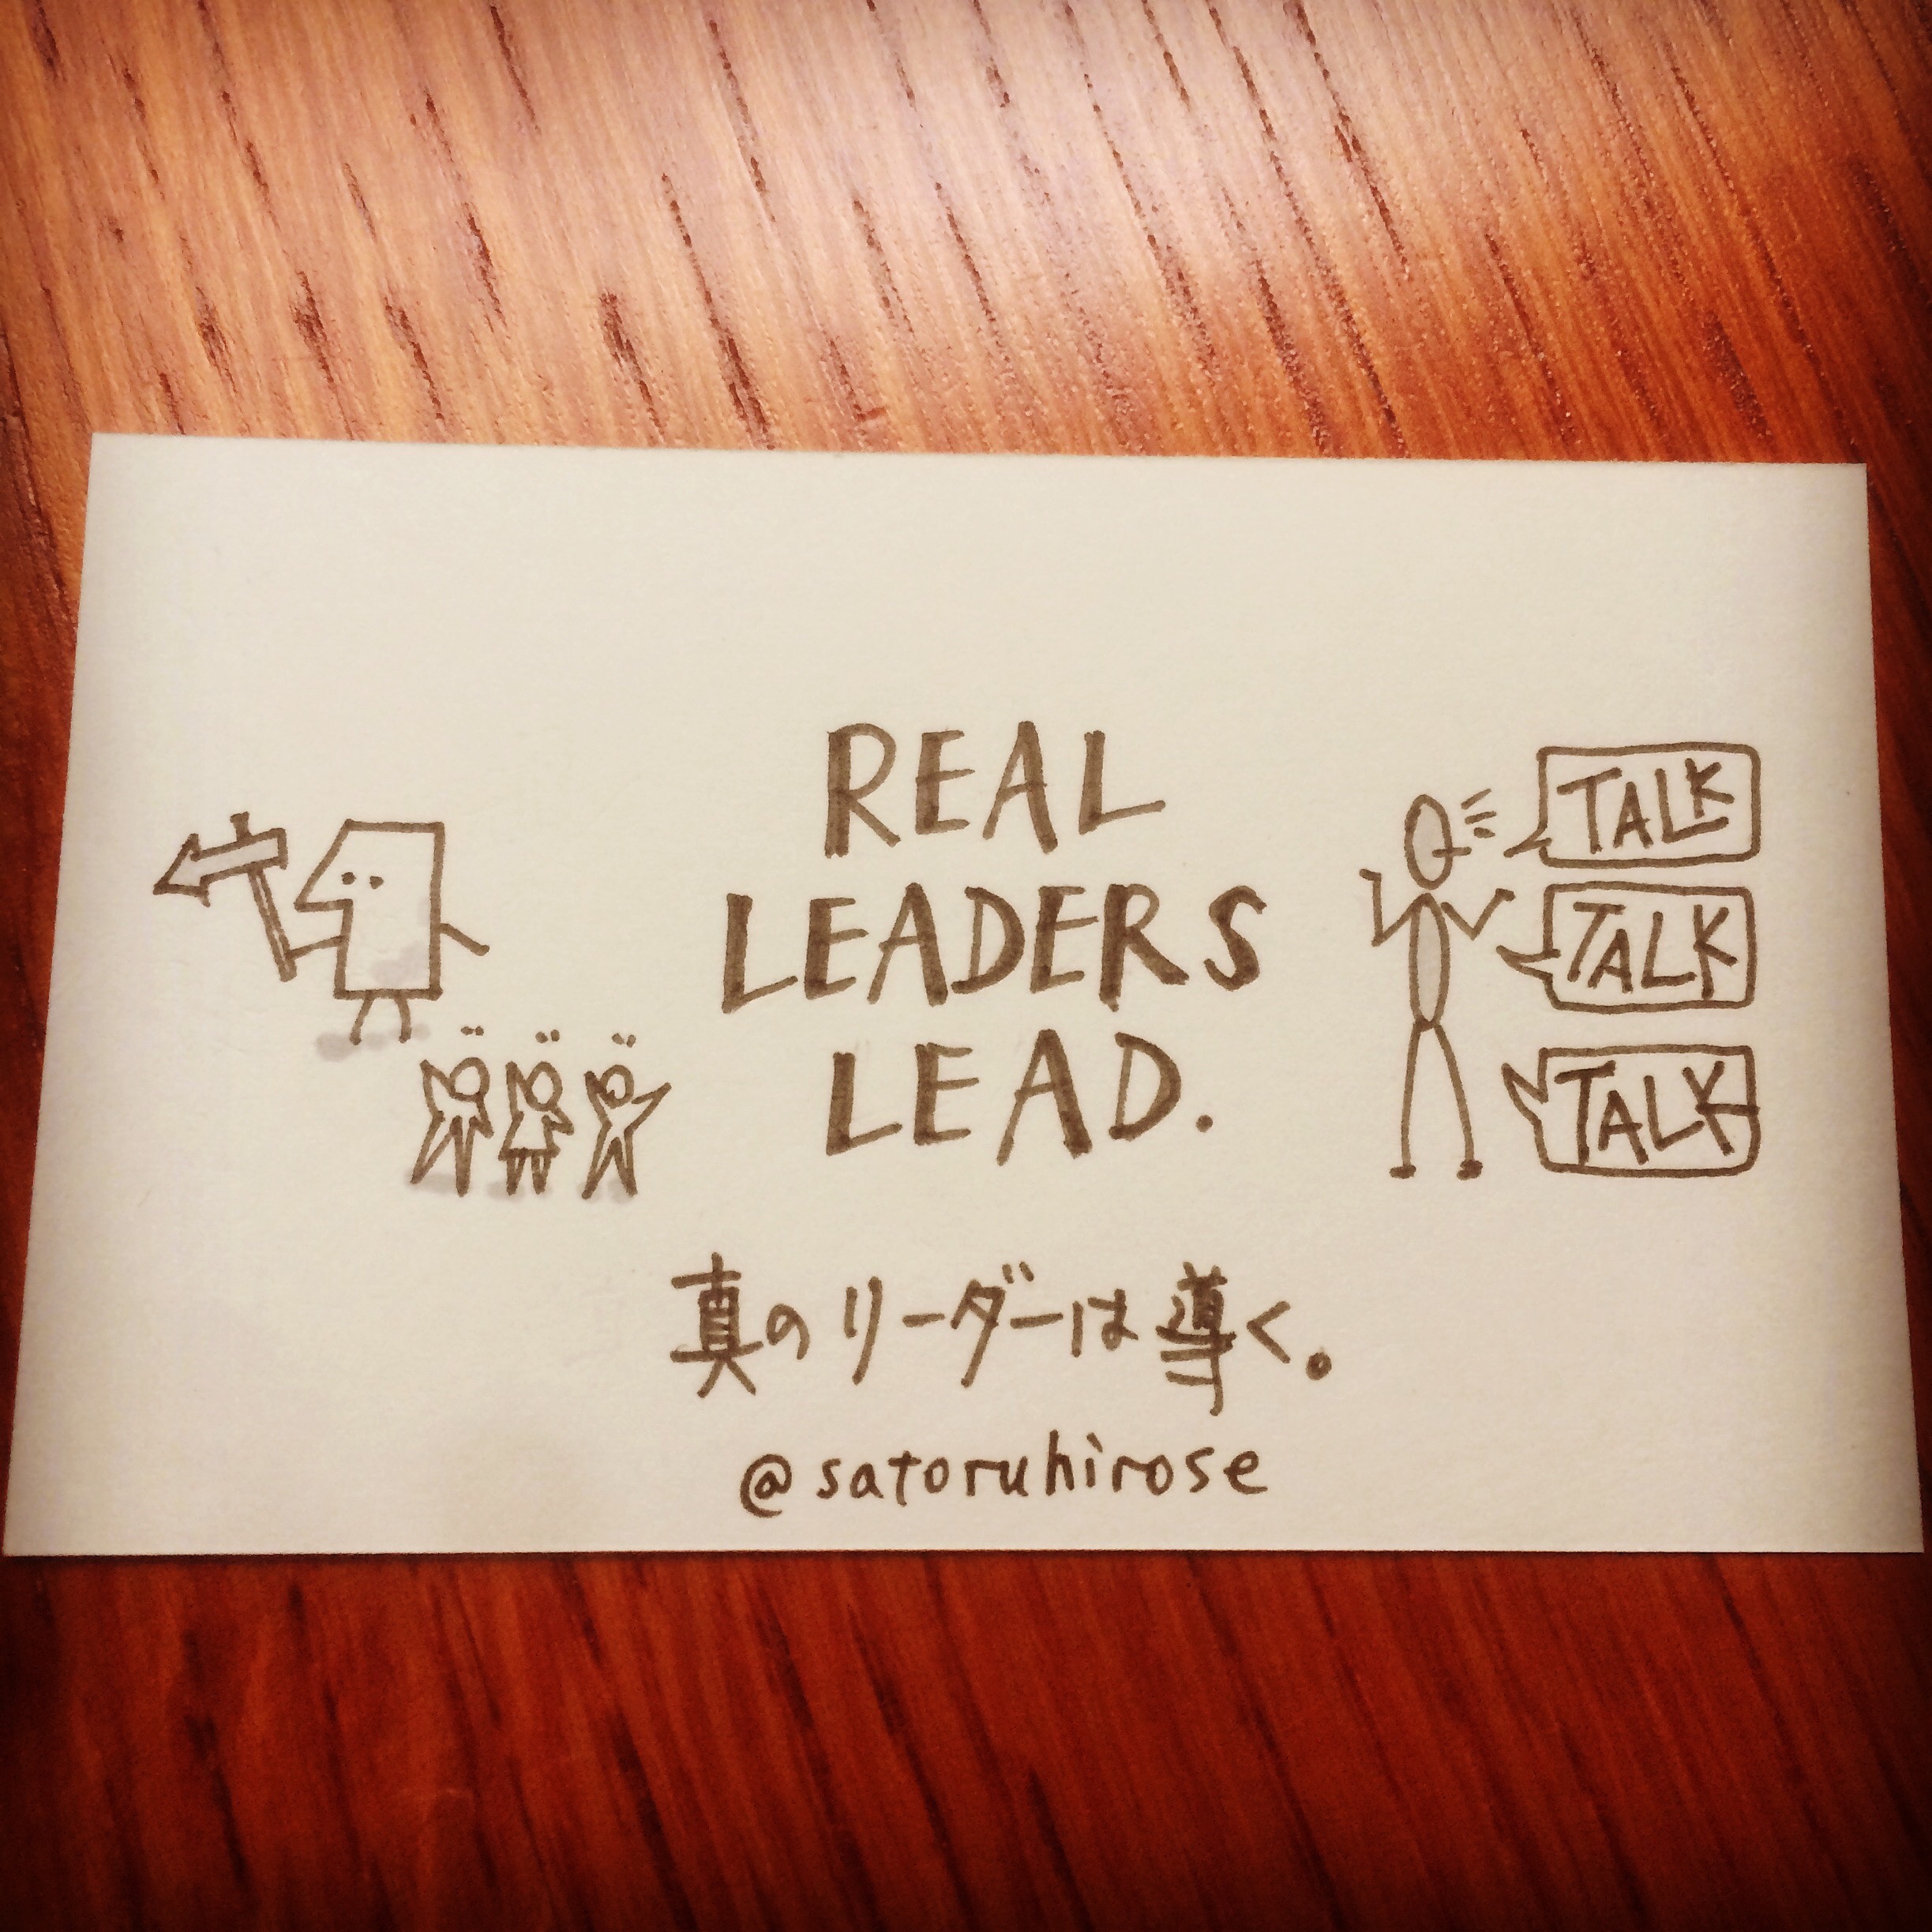 Real leaders lead.